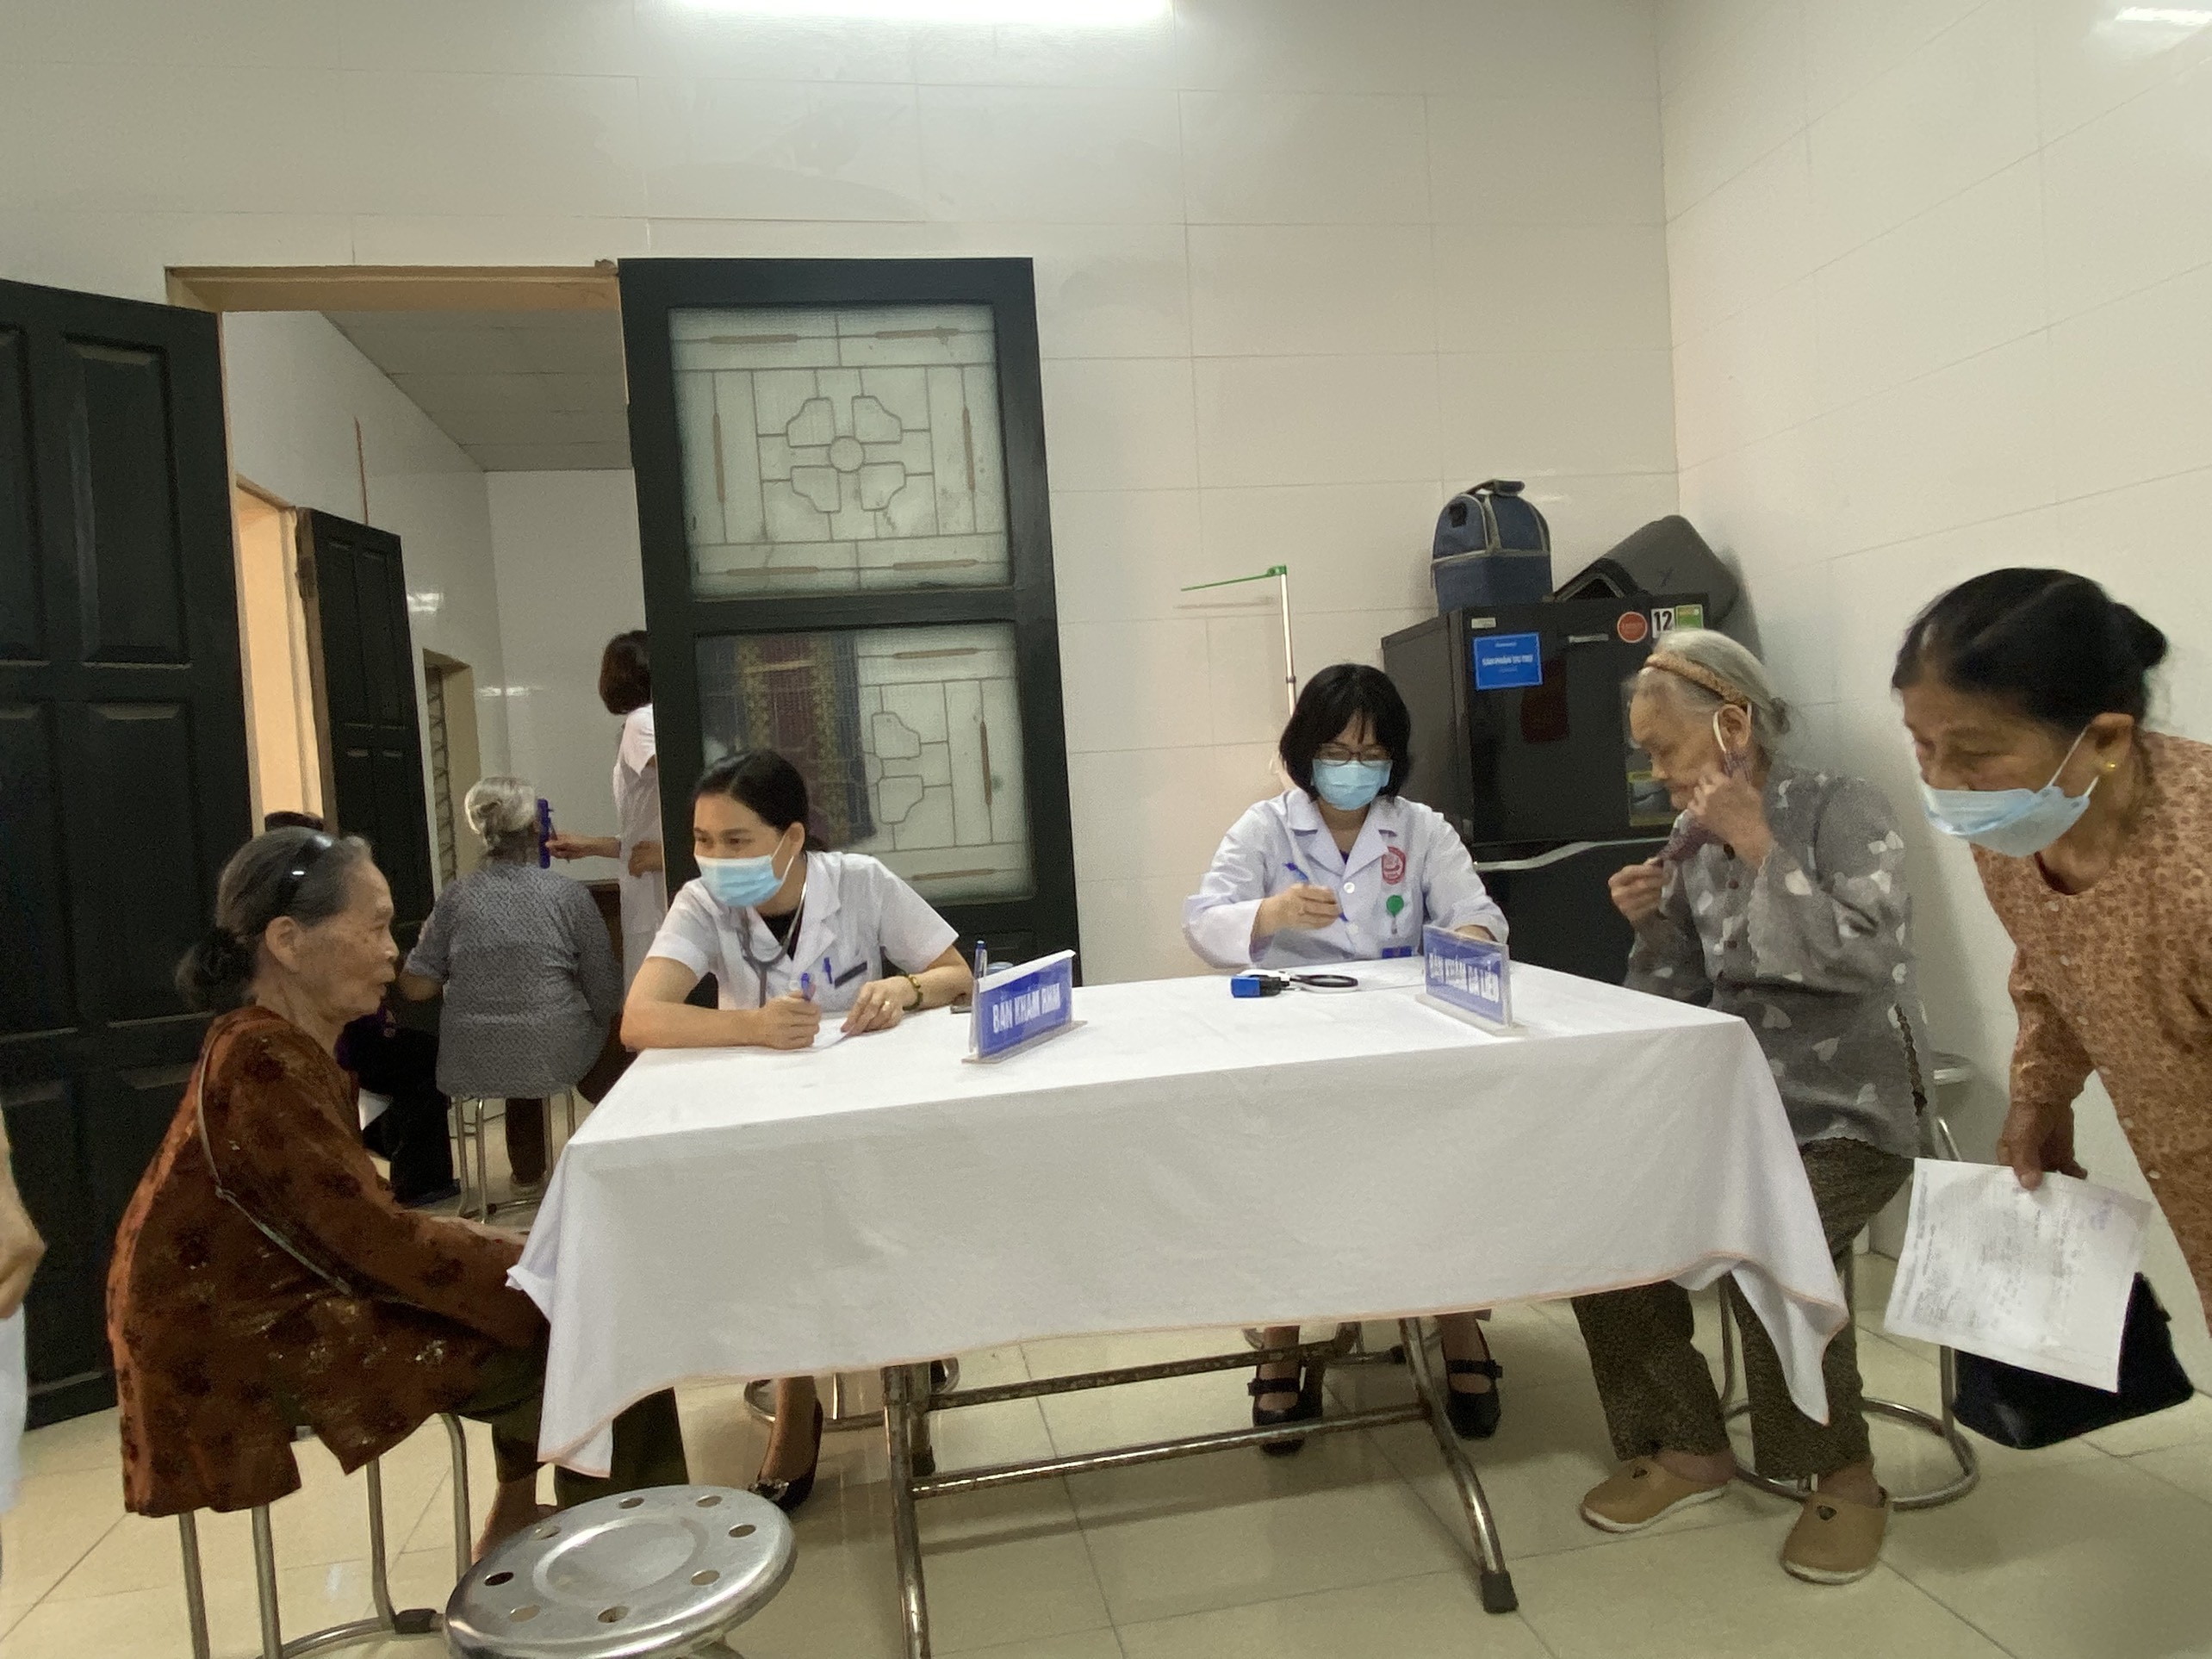 Trung tâm Kiểm soát bệnh tật: Khám bệnh miễn phí cho bệnh nhân gia đình chính sách tại phường Thọ...|https://kiemsoatbenhtatbacgiang.vn/en_GB/chi-tiet-tin-tuc/-/asset_publisher/M0UUAFstbTMq/content/trung-tam-kiem-soat-benh-tat-kham-benh-mien-phi-cho-benh-nhan-gia-inh-chinh-sach-tai-phuong-tho-xuong